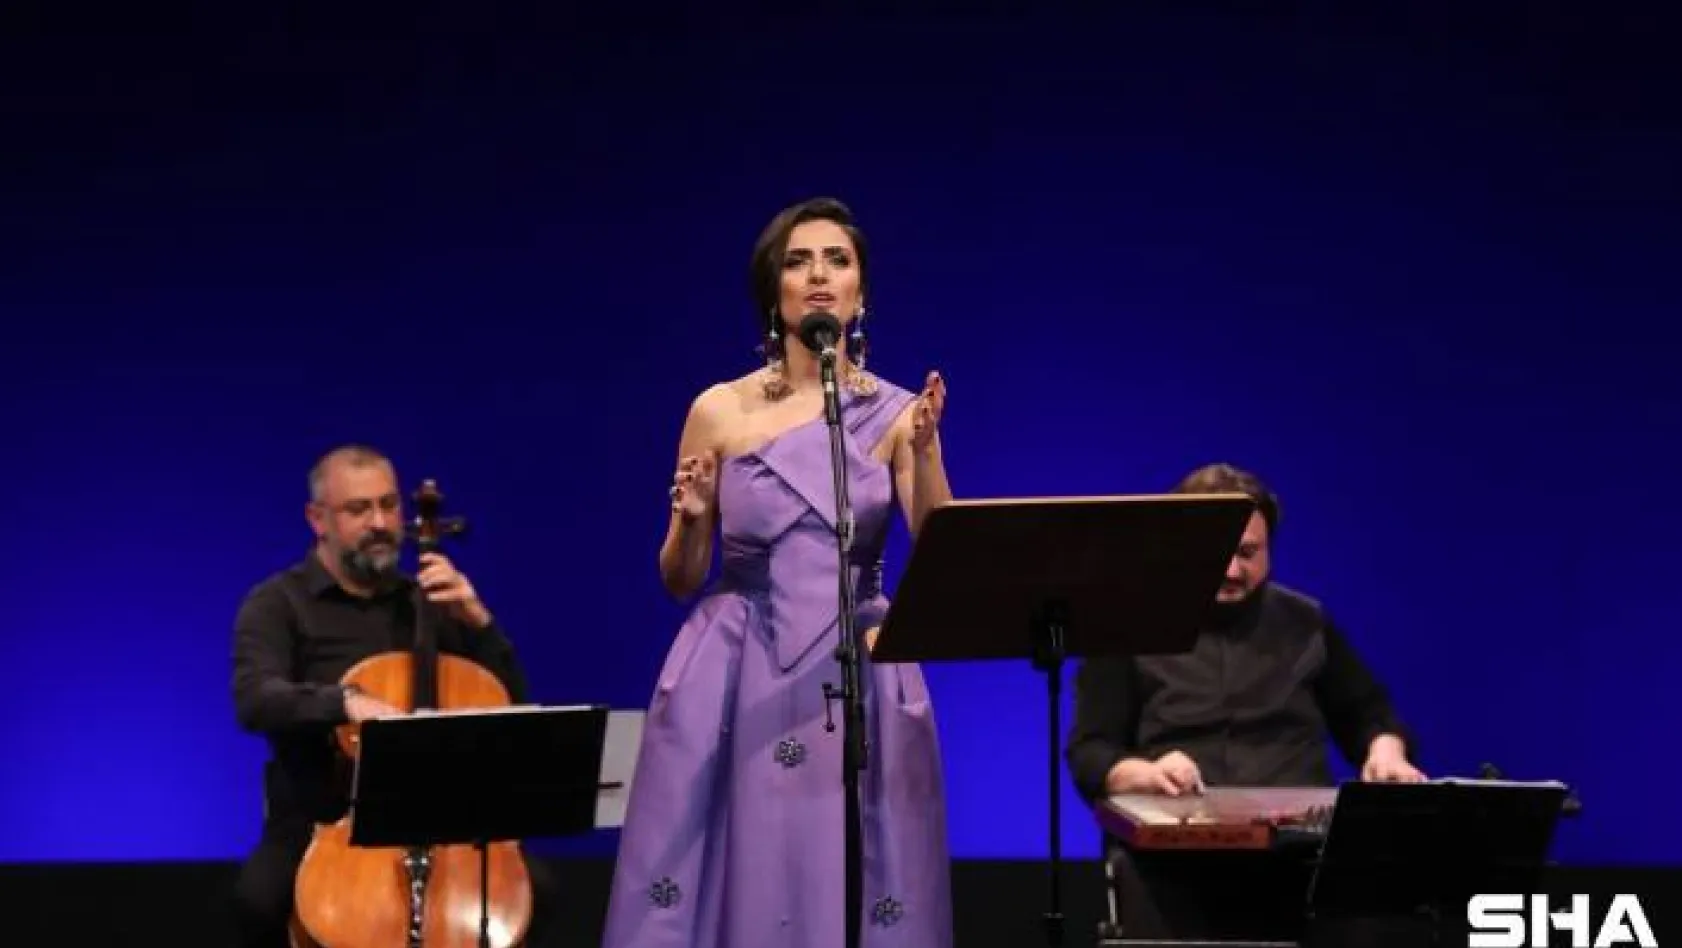 Klasik Türk müziği eserleri Yaprak Sayar'la ses buluyor